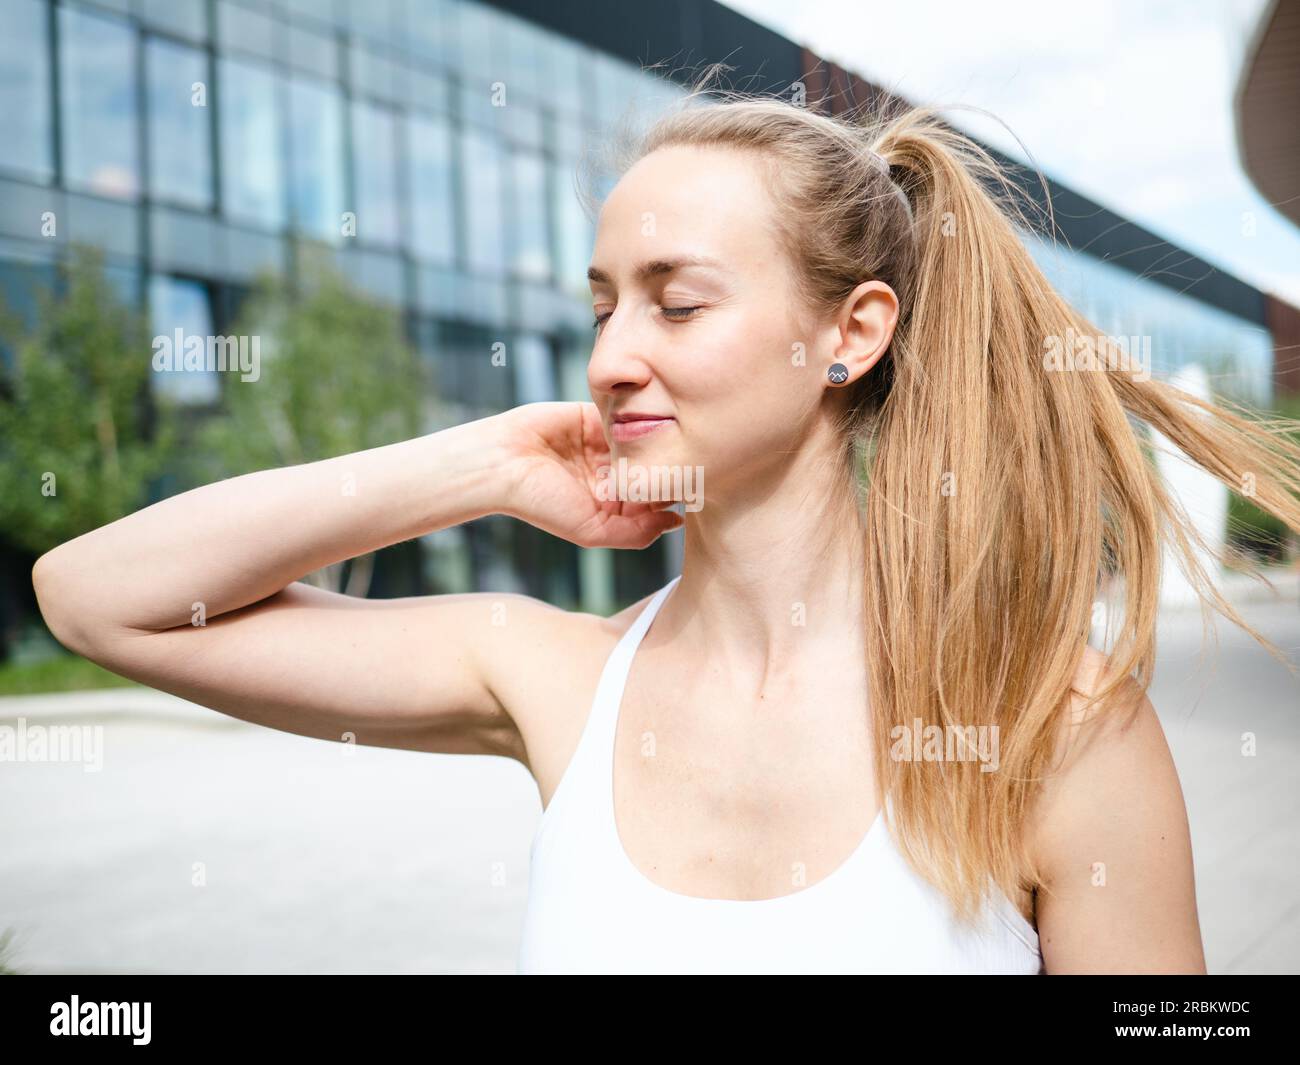 Eine junge blonde Frau glättet ihr Haar im Freien an sonnigen Sommertagen mit urbanem Hintergrund Stockfoto